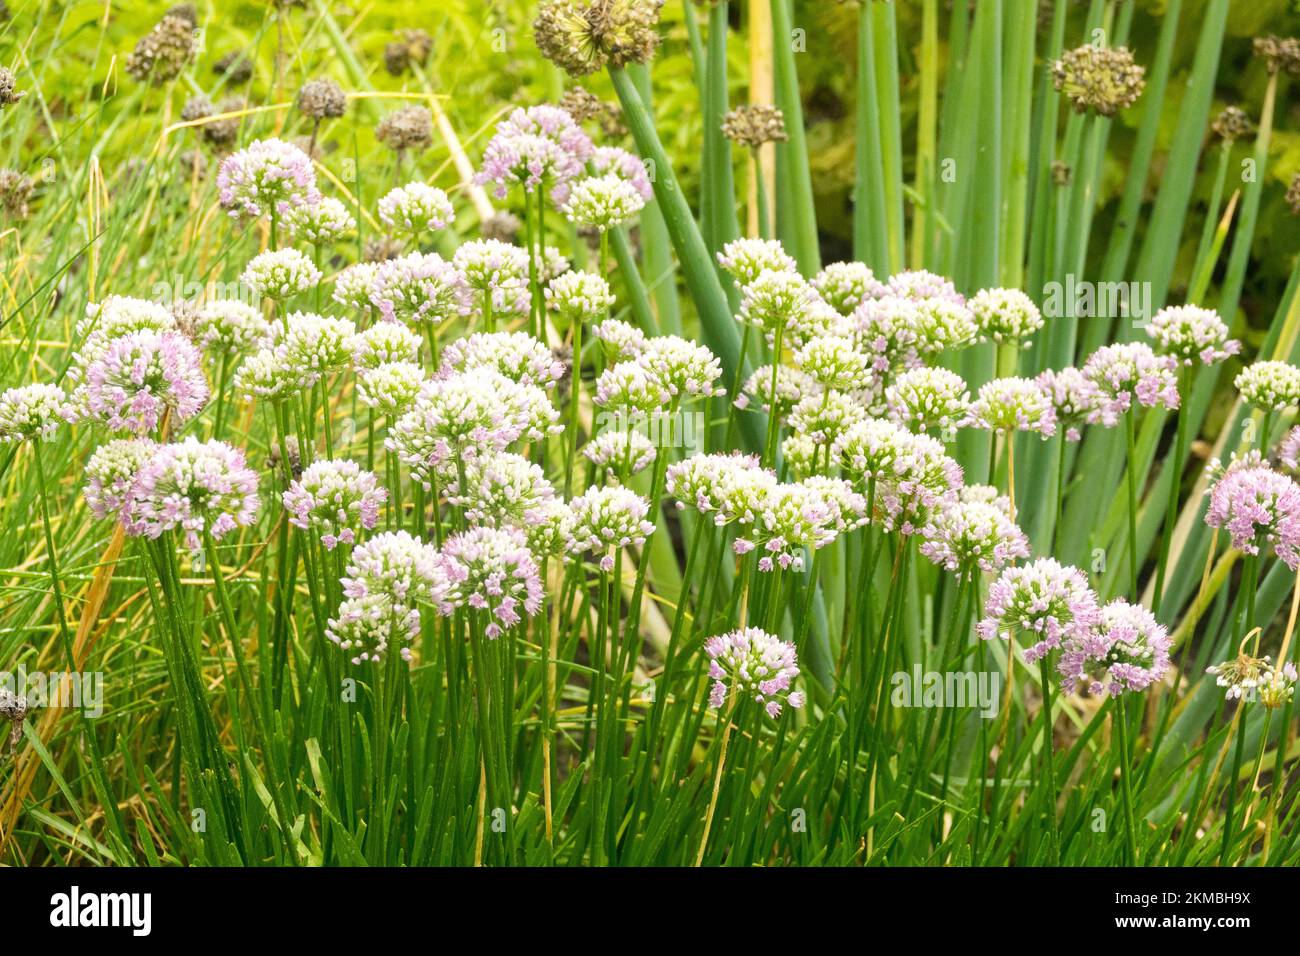 Allium senescens, jardin, herbe, ciboulette de curly, ail de montagne de Blooming, Ail allemand Banque D'Images